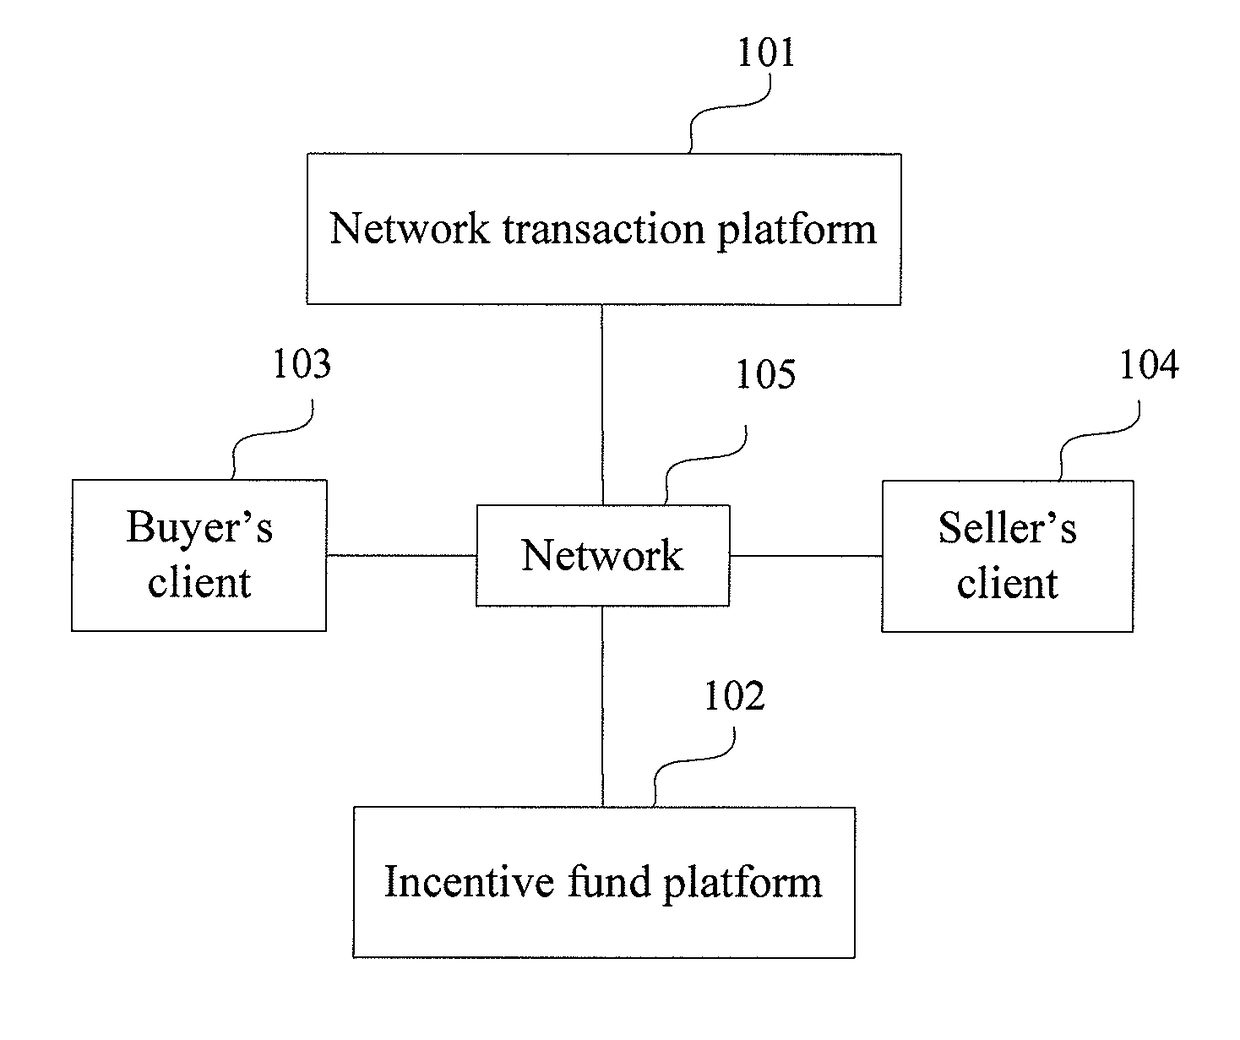 Incentive method, online transaction platform, and incentive funds platform for safe online transactions